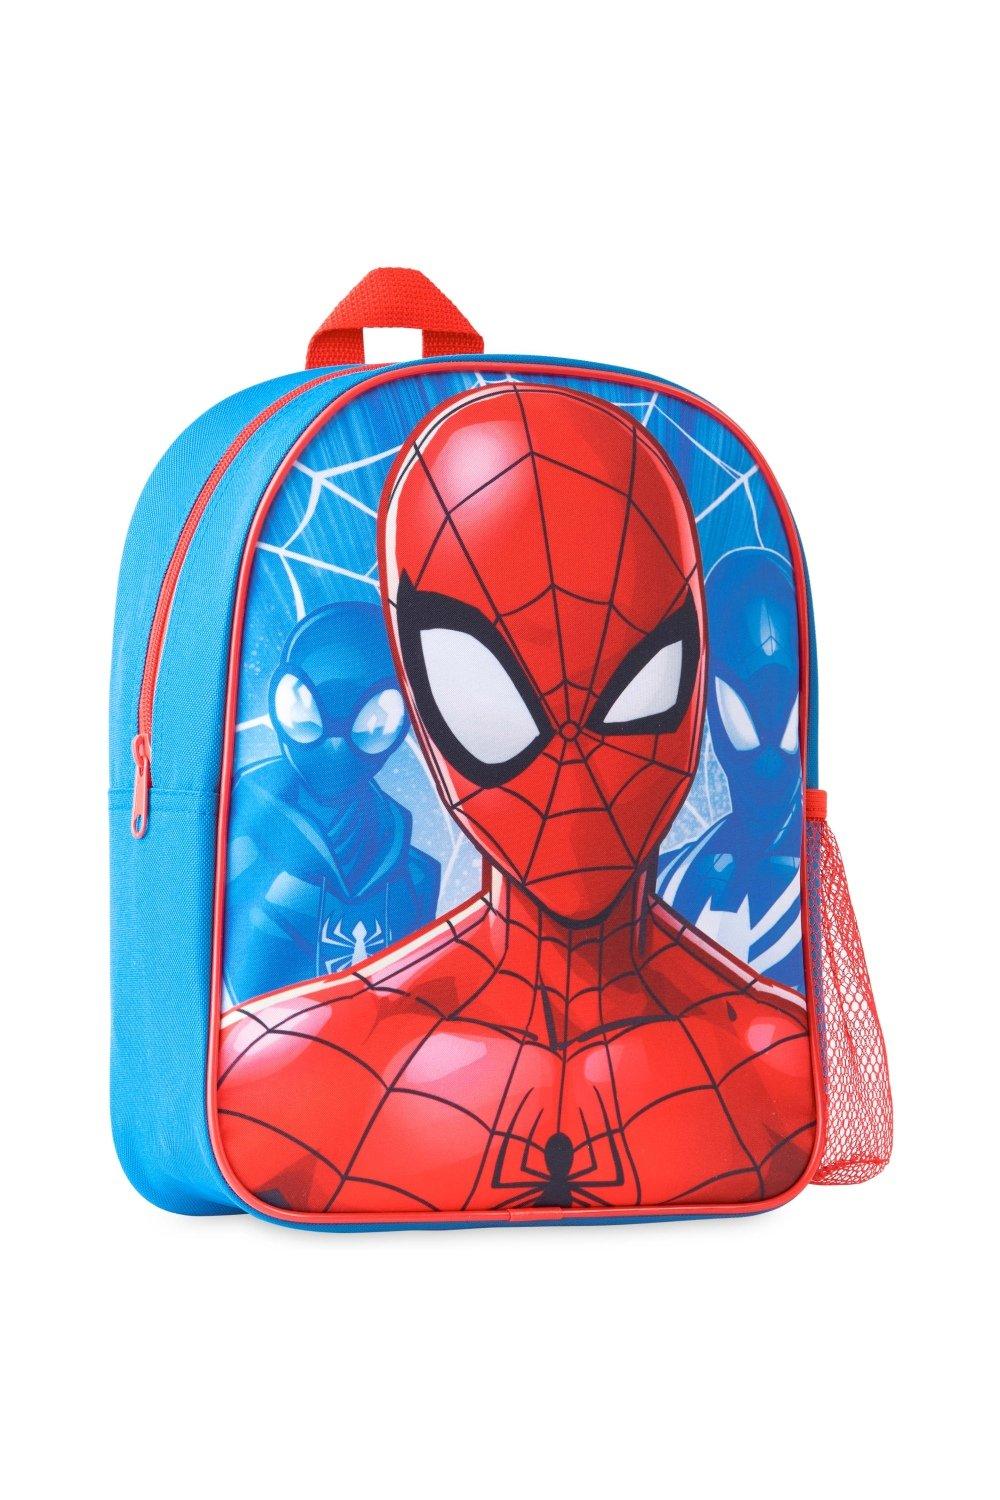 Школьный рюкзак Человека-паука Marvel, мультиколор сумка для детского сада милый детский рюкзак школьные ранцы для малышей